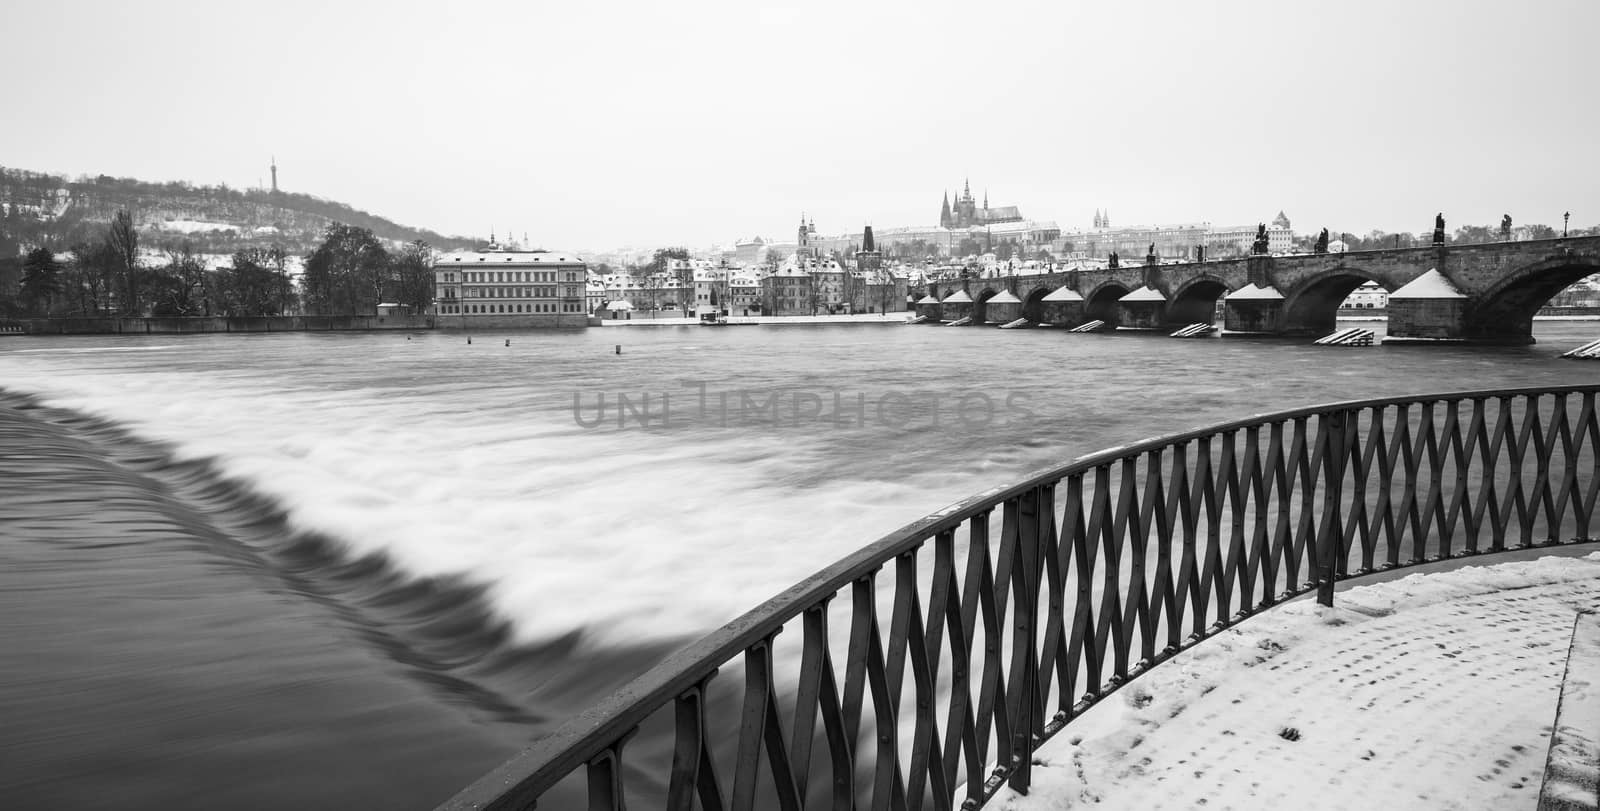 Romantic Snowy Prague gothic Castle with the Charles Bridge, Czech Republic